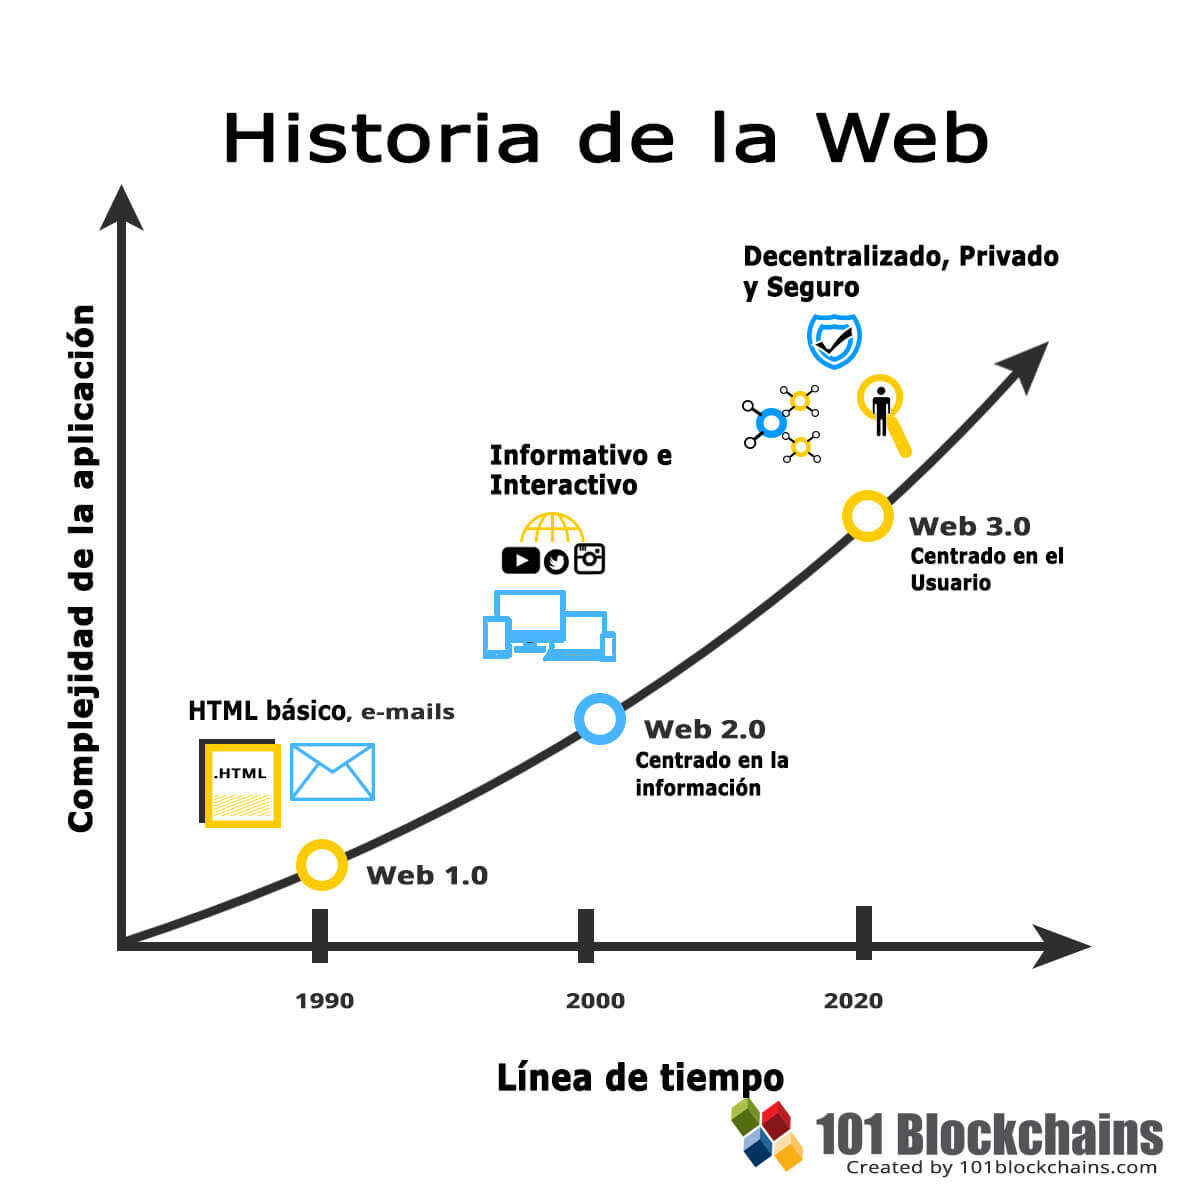 Historia de la Web